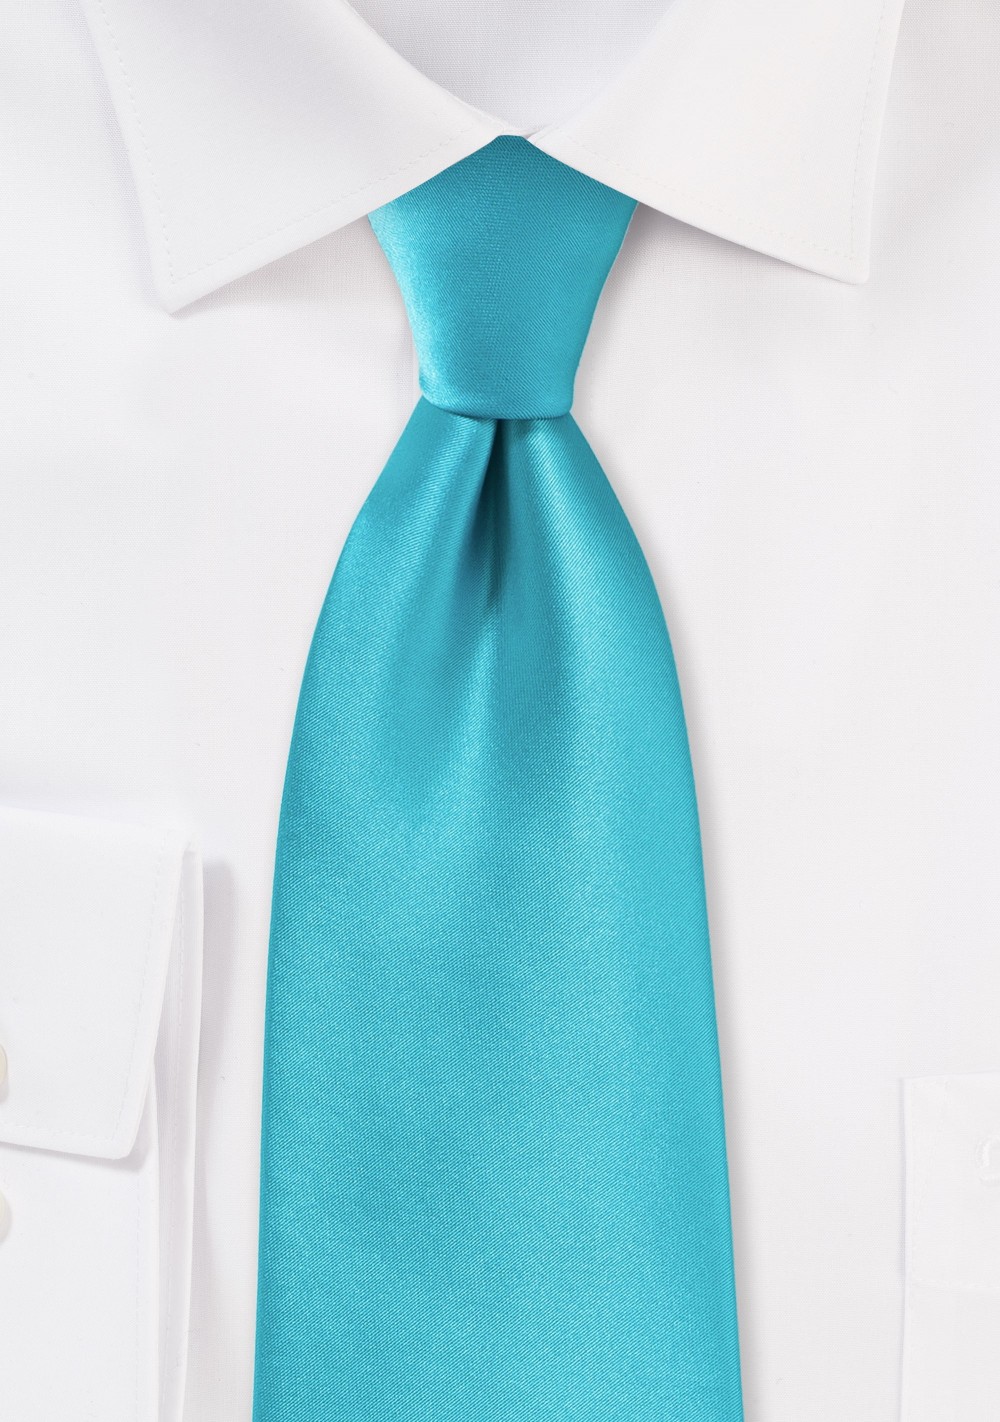 Bright Aqua Colored Necktie